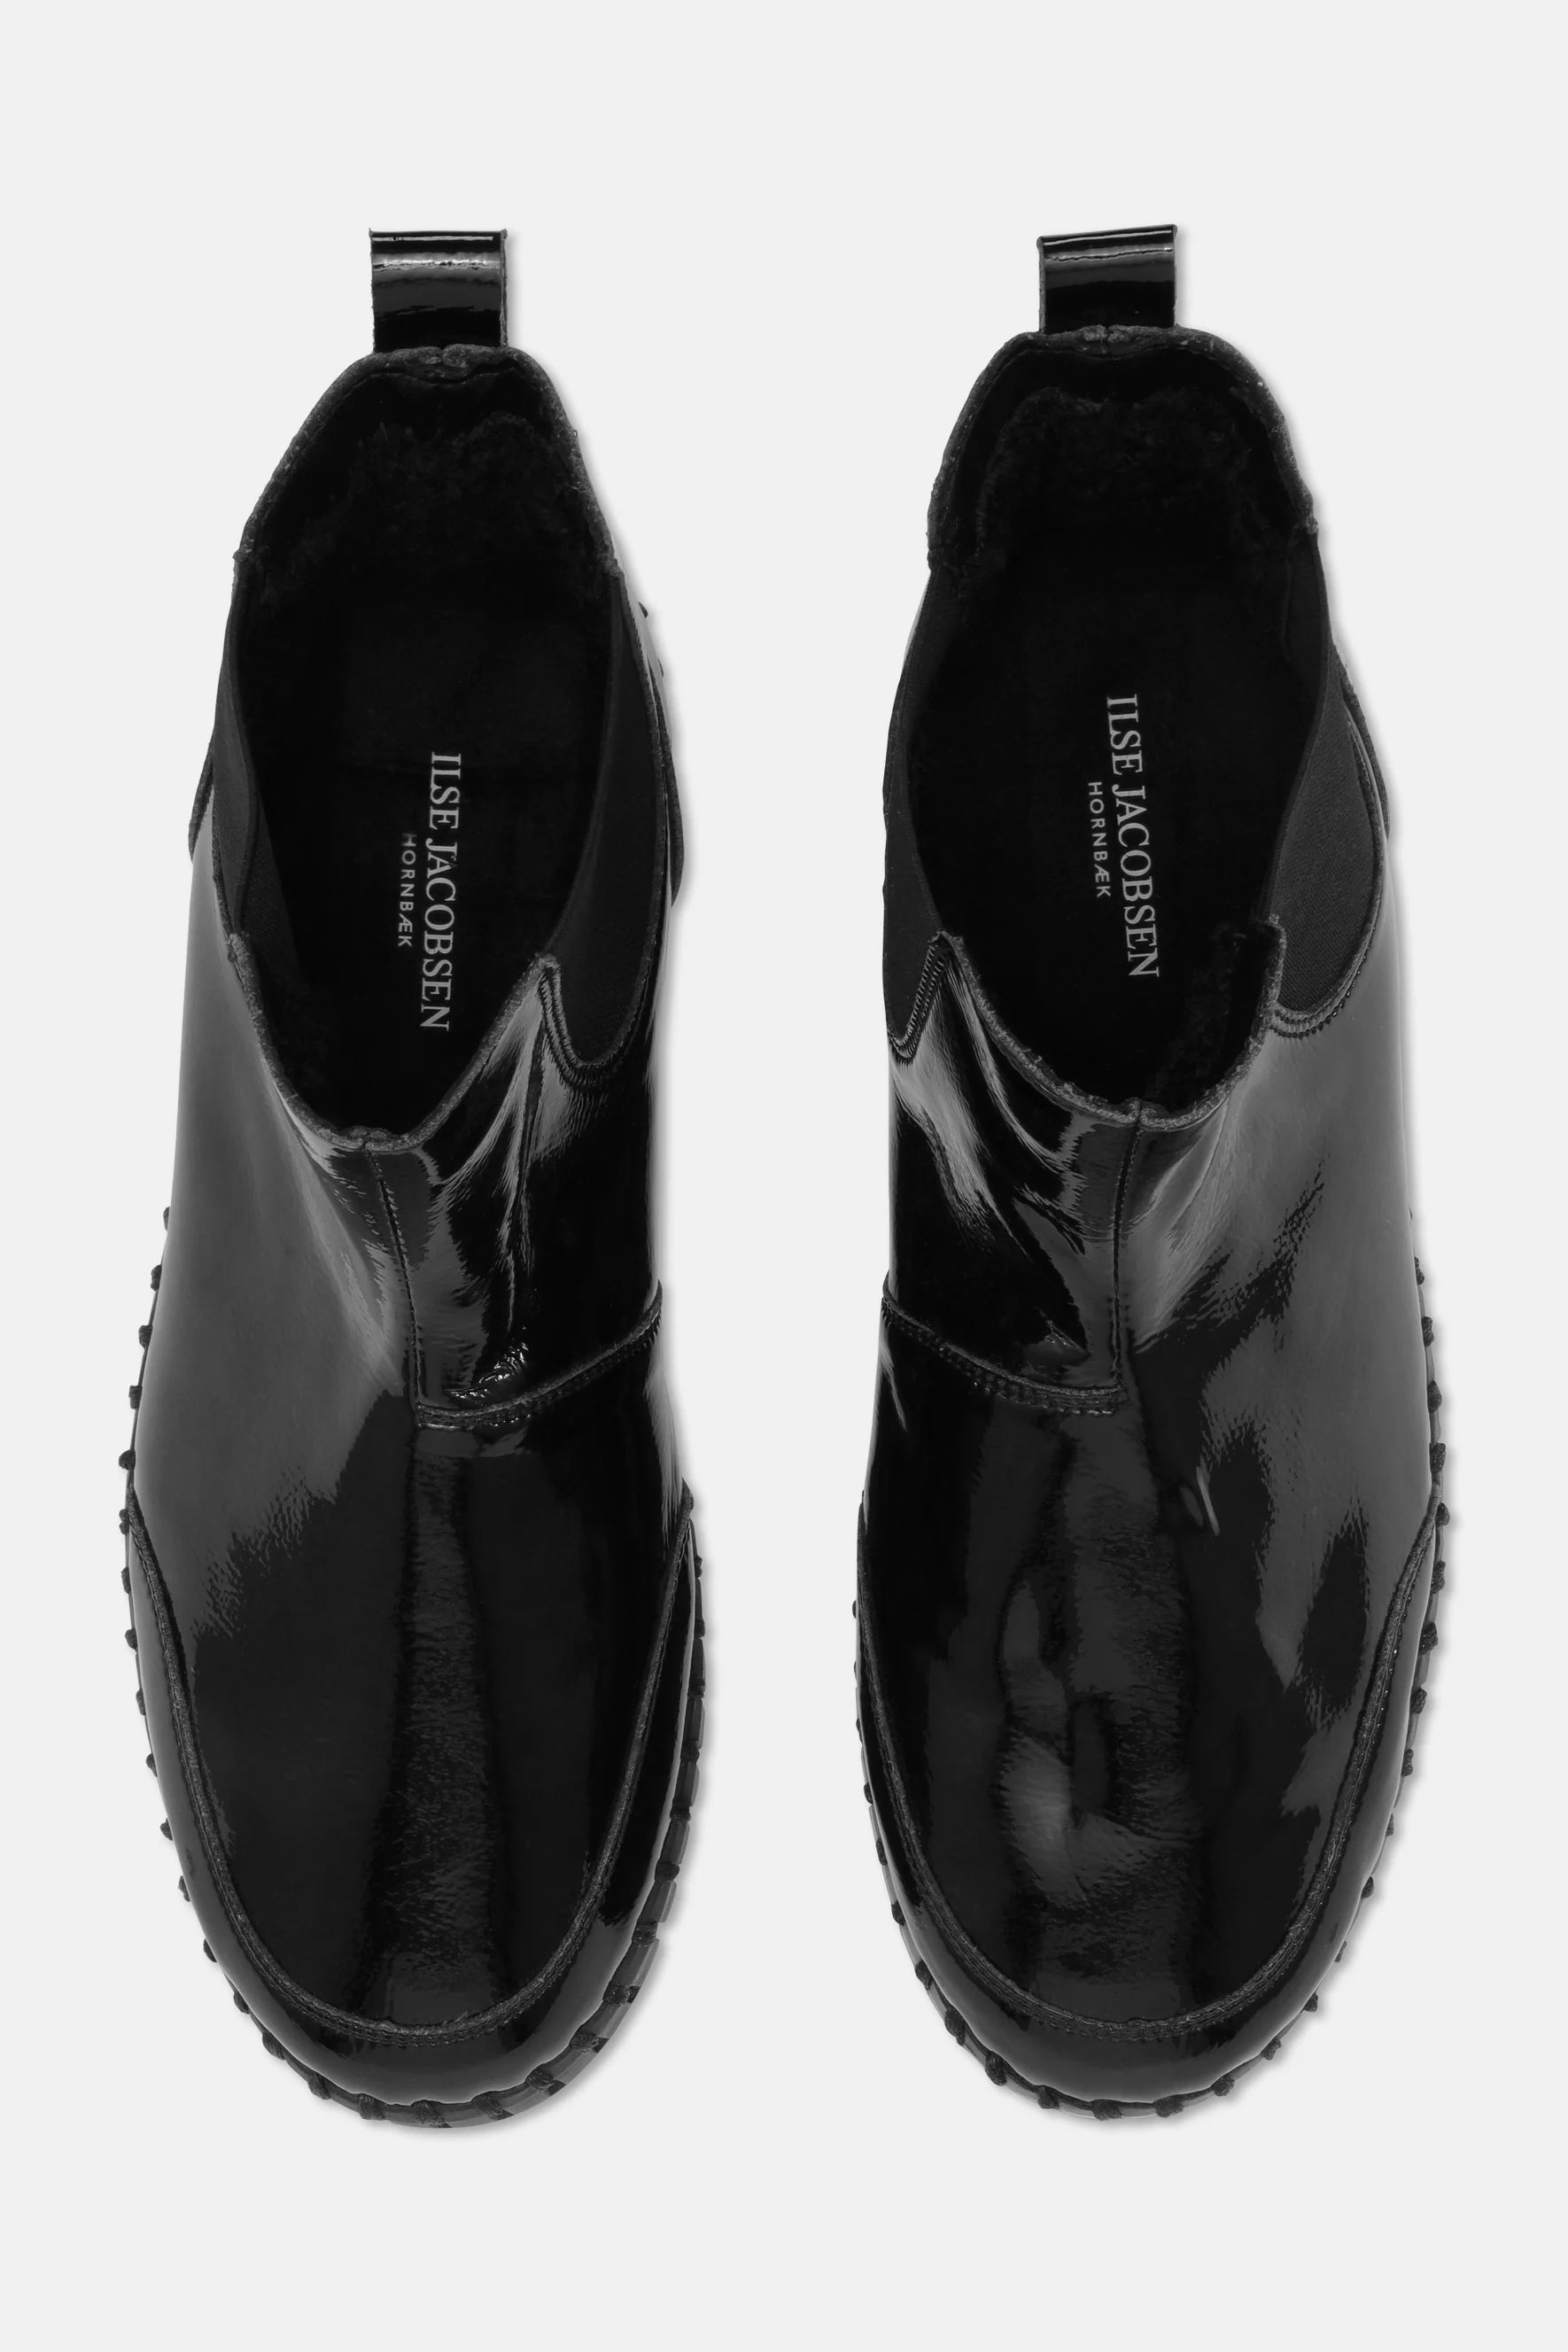 Ilse Jacobsen Tulip Ankle Boot - Gloss Black